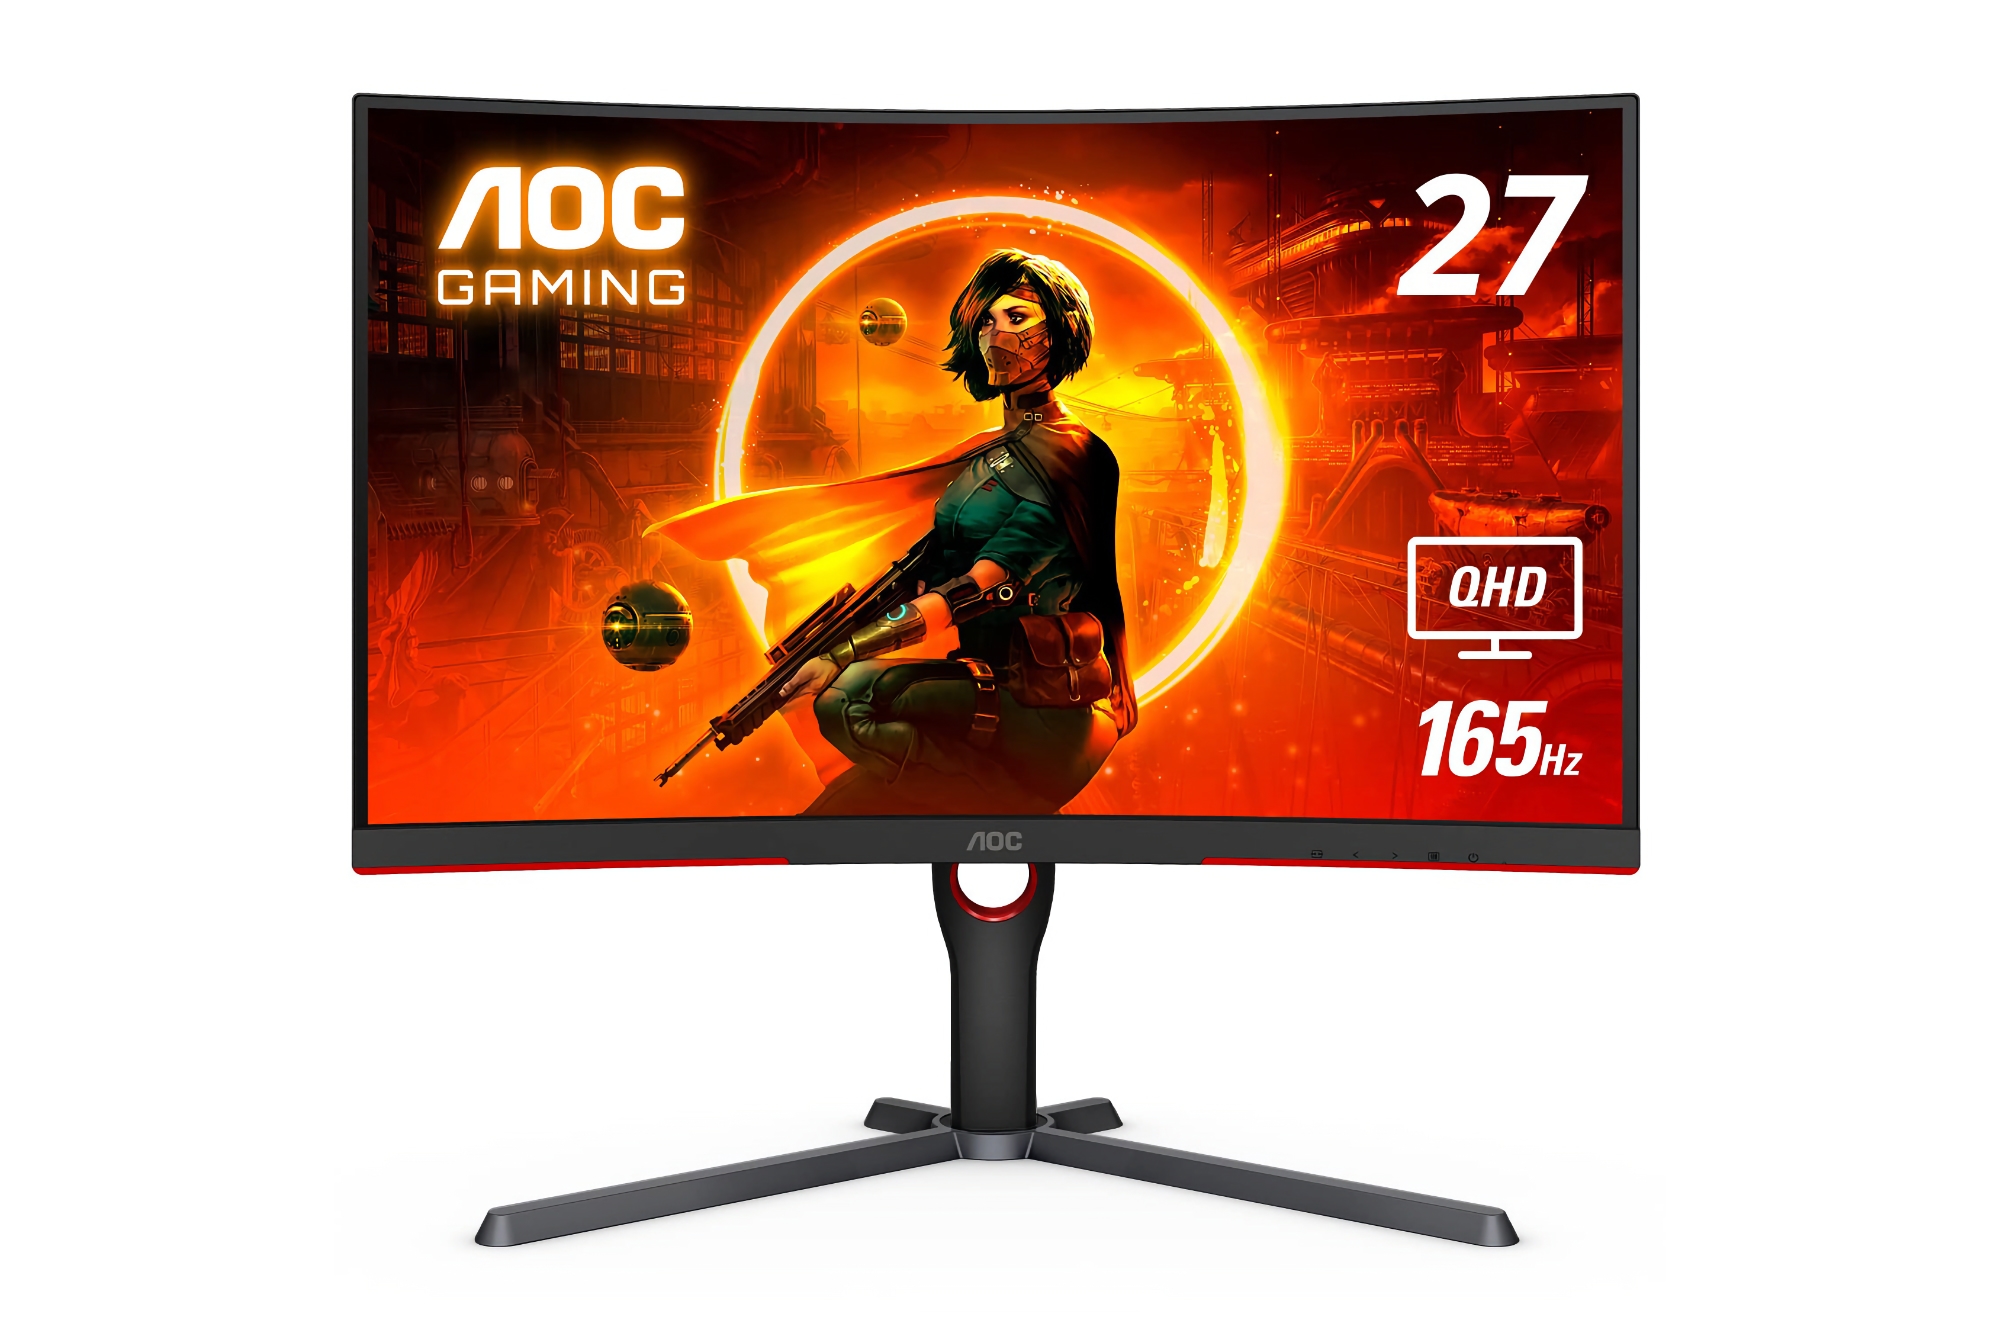 Oferta del día en Amazon: Monitor curvo para juegos AOC CQ27G3S de 27 pulgadas compatible con 165 Hz con 40€ de descuento.